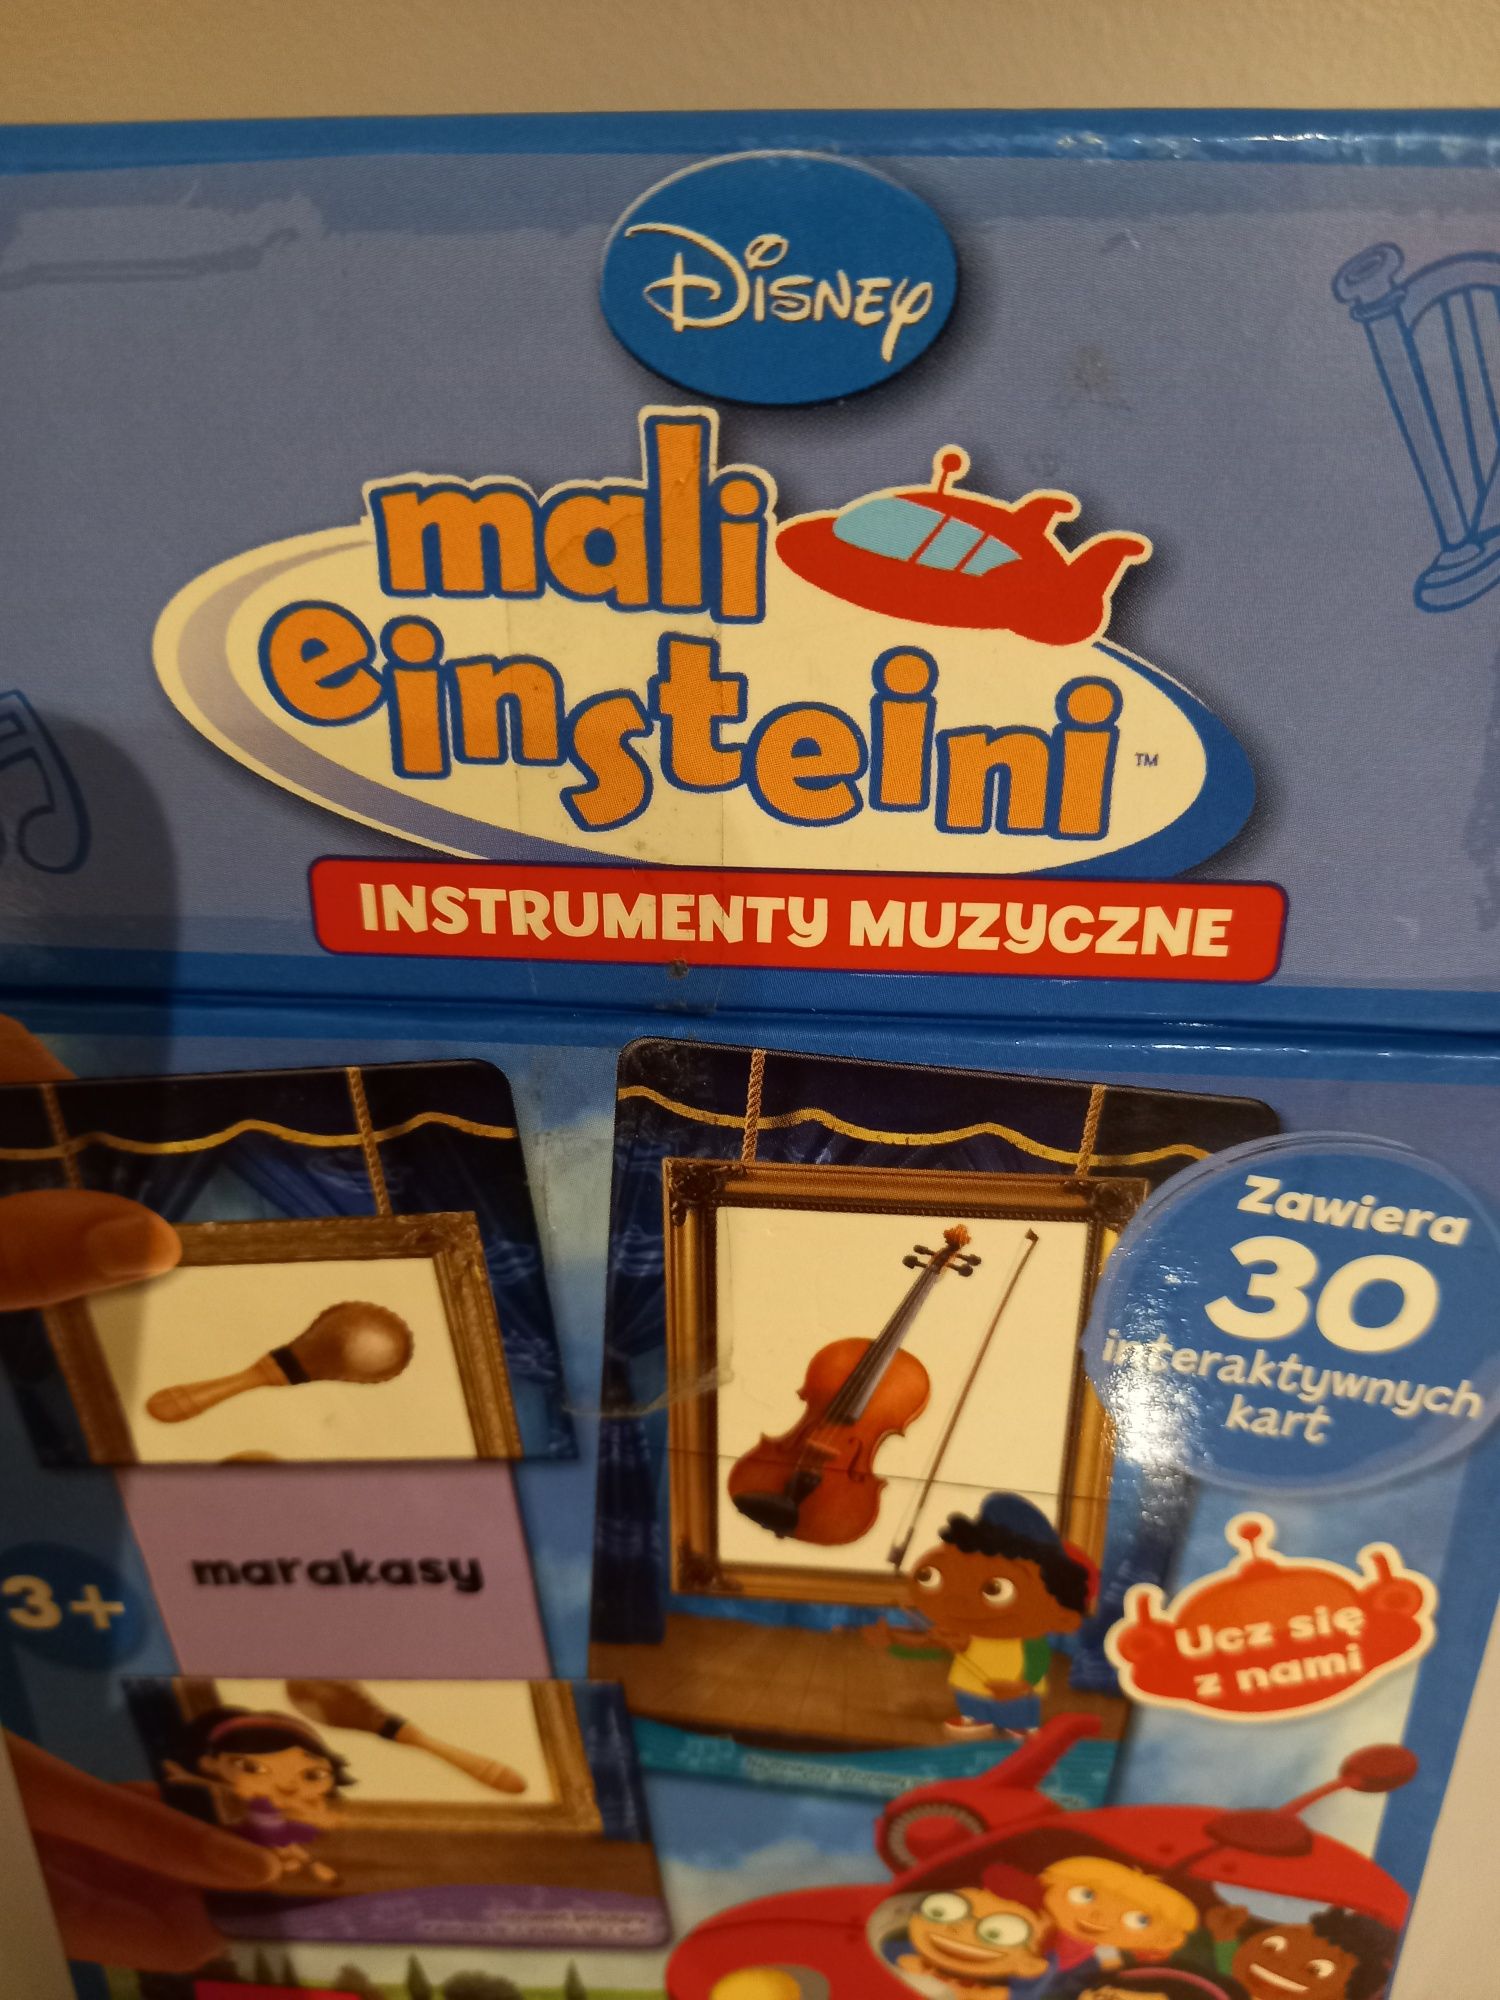 Gra mali einstaini instrumenty muzyczne